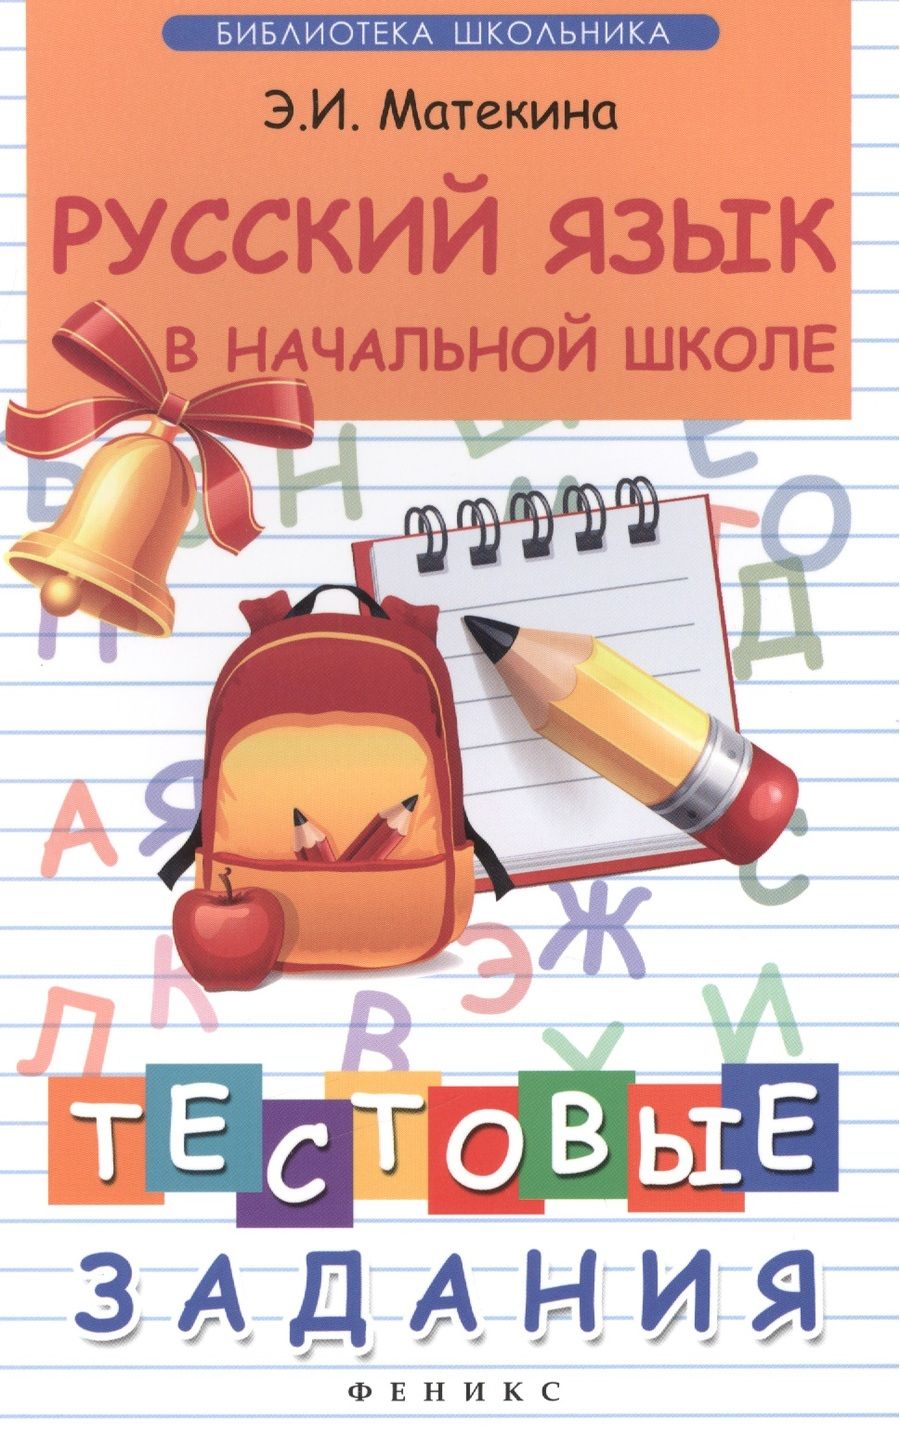 Обложка книги "Матекина: Русский язык в начальной школе: тестовые задания"